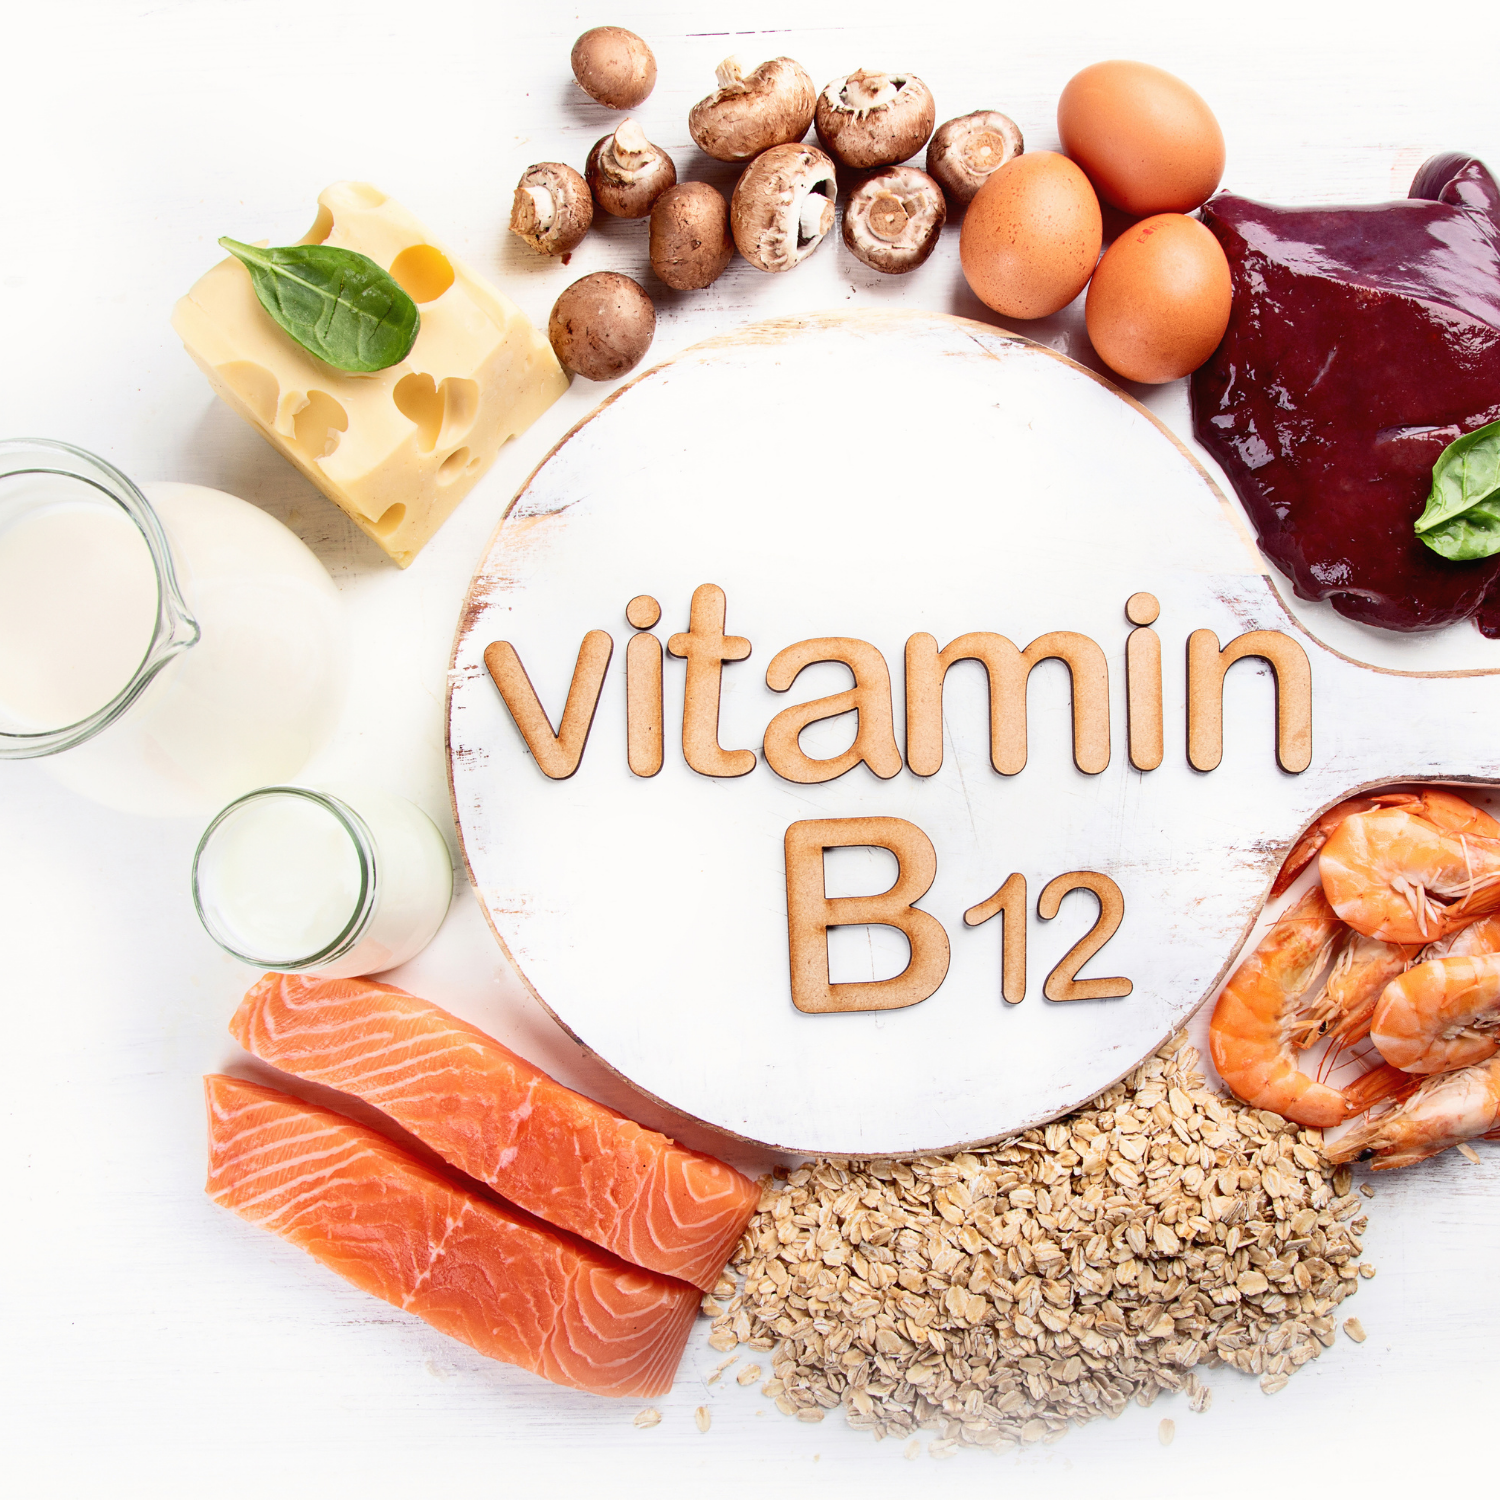 Vitamin B12 Tropfen - Immunsystem, Nerven, Stoffwechsel, Energie, Leber